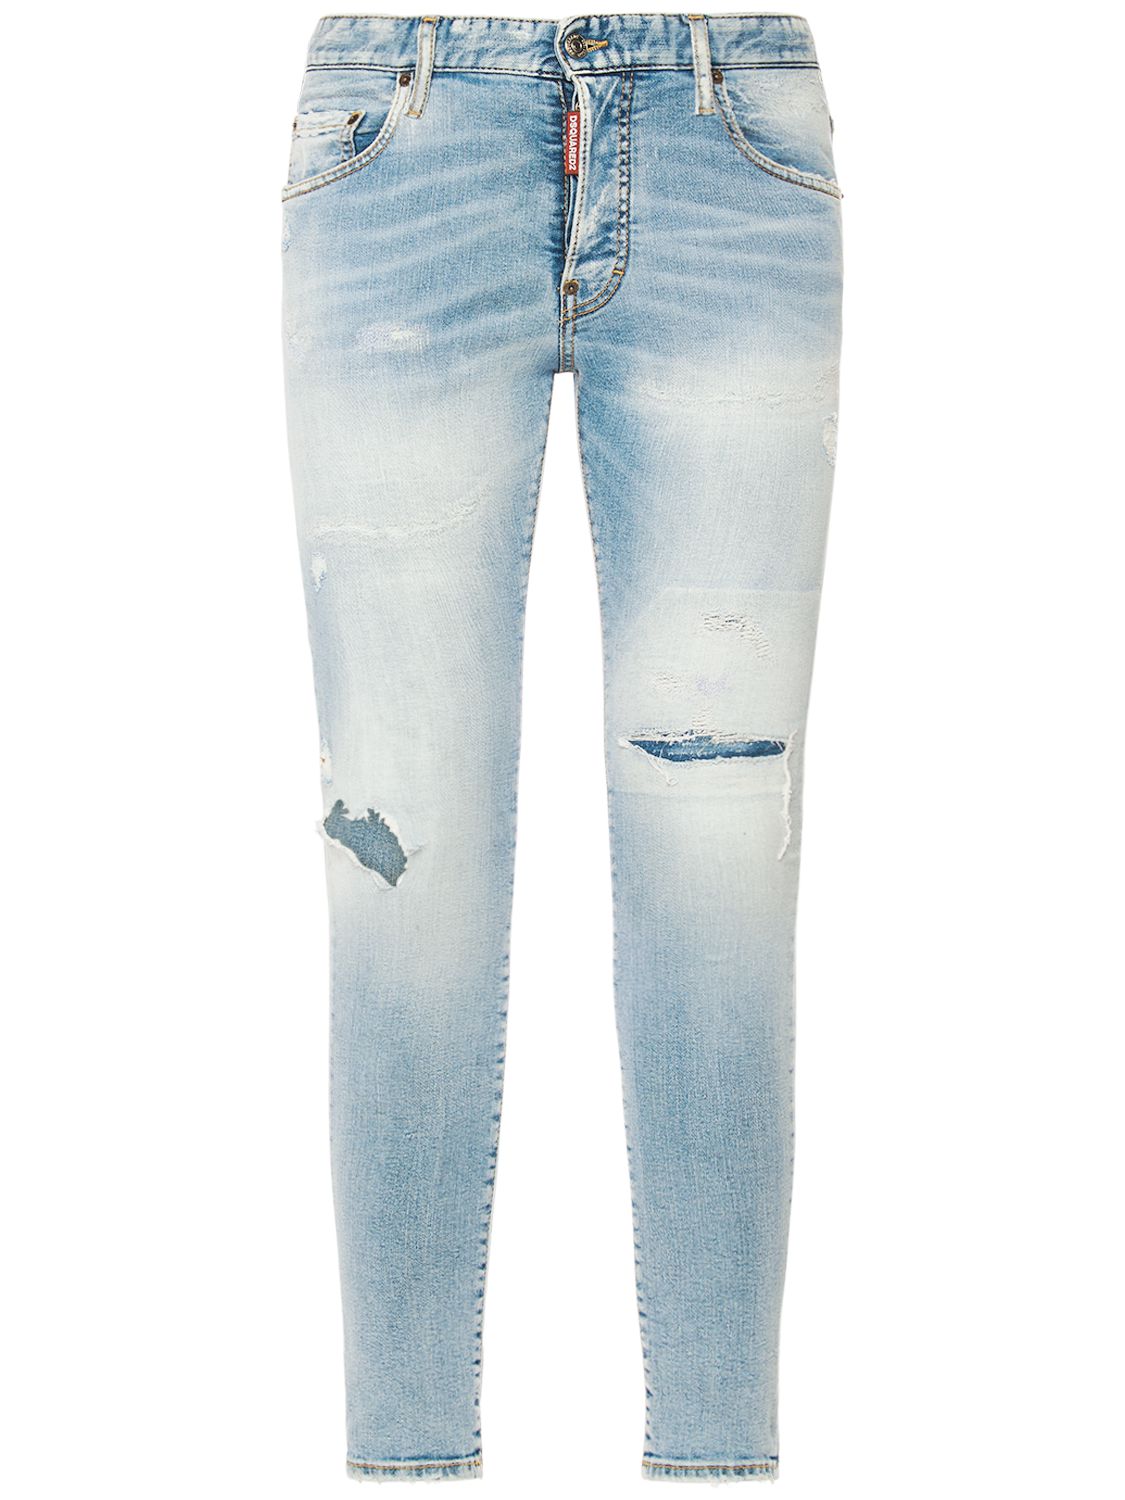 Jeans Super Twinky In Denim Di Cotone Stretch - DSQUARED2 - Modalova